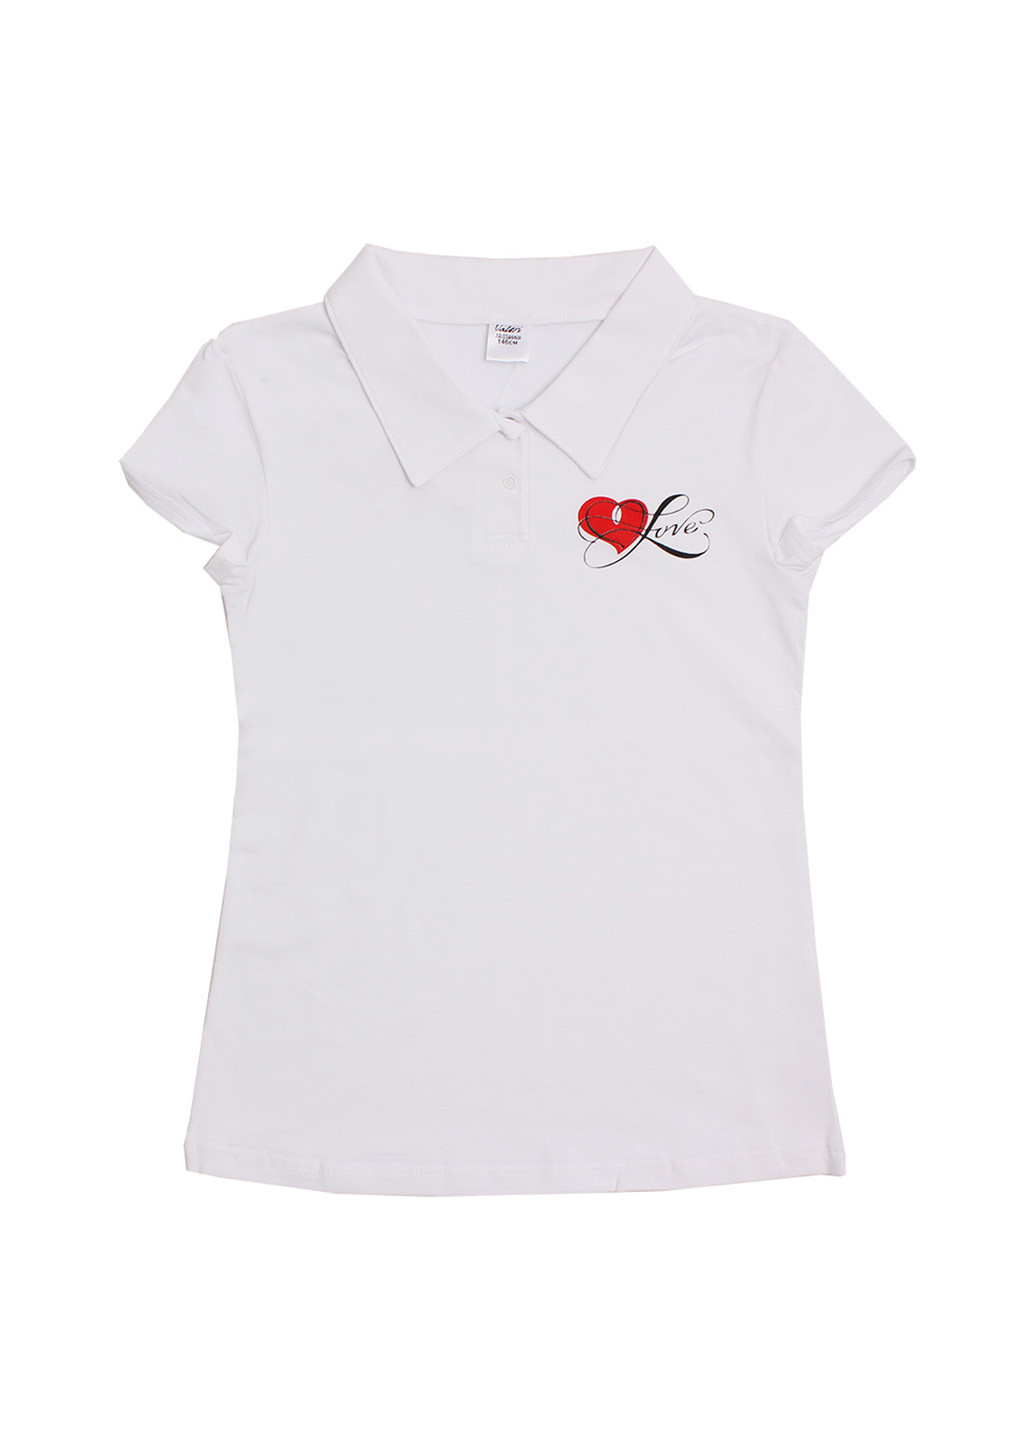 Белая детская футболка-поло для девочки Валери-Текс с рисунком